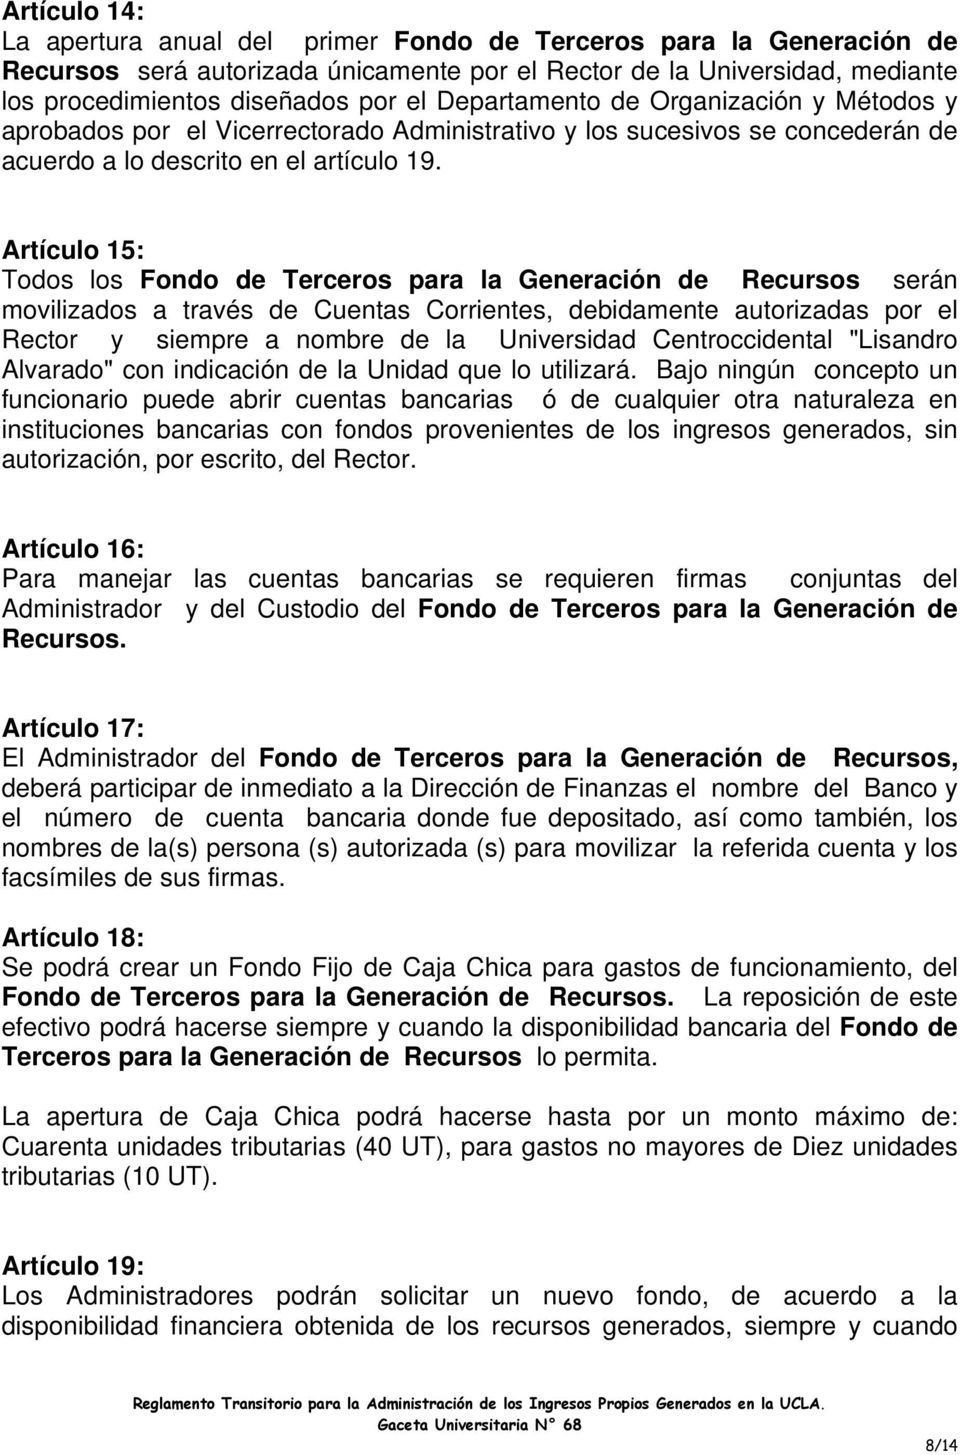 Artículo 15: Todos los Fondo de Terceros para la Generación de Recursos serán movilizados a través de Cuentas Corrientes, debidamente autorizadas por el Rector y siempre a nombre de la Universidad